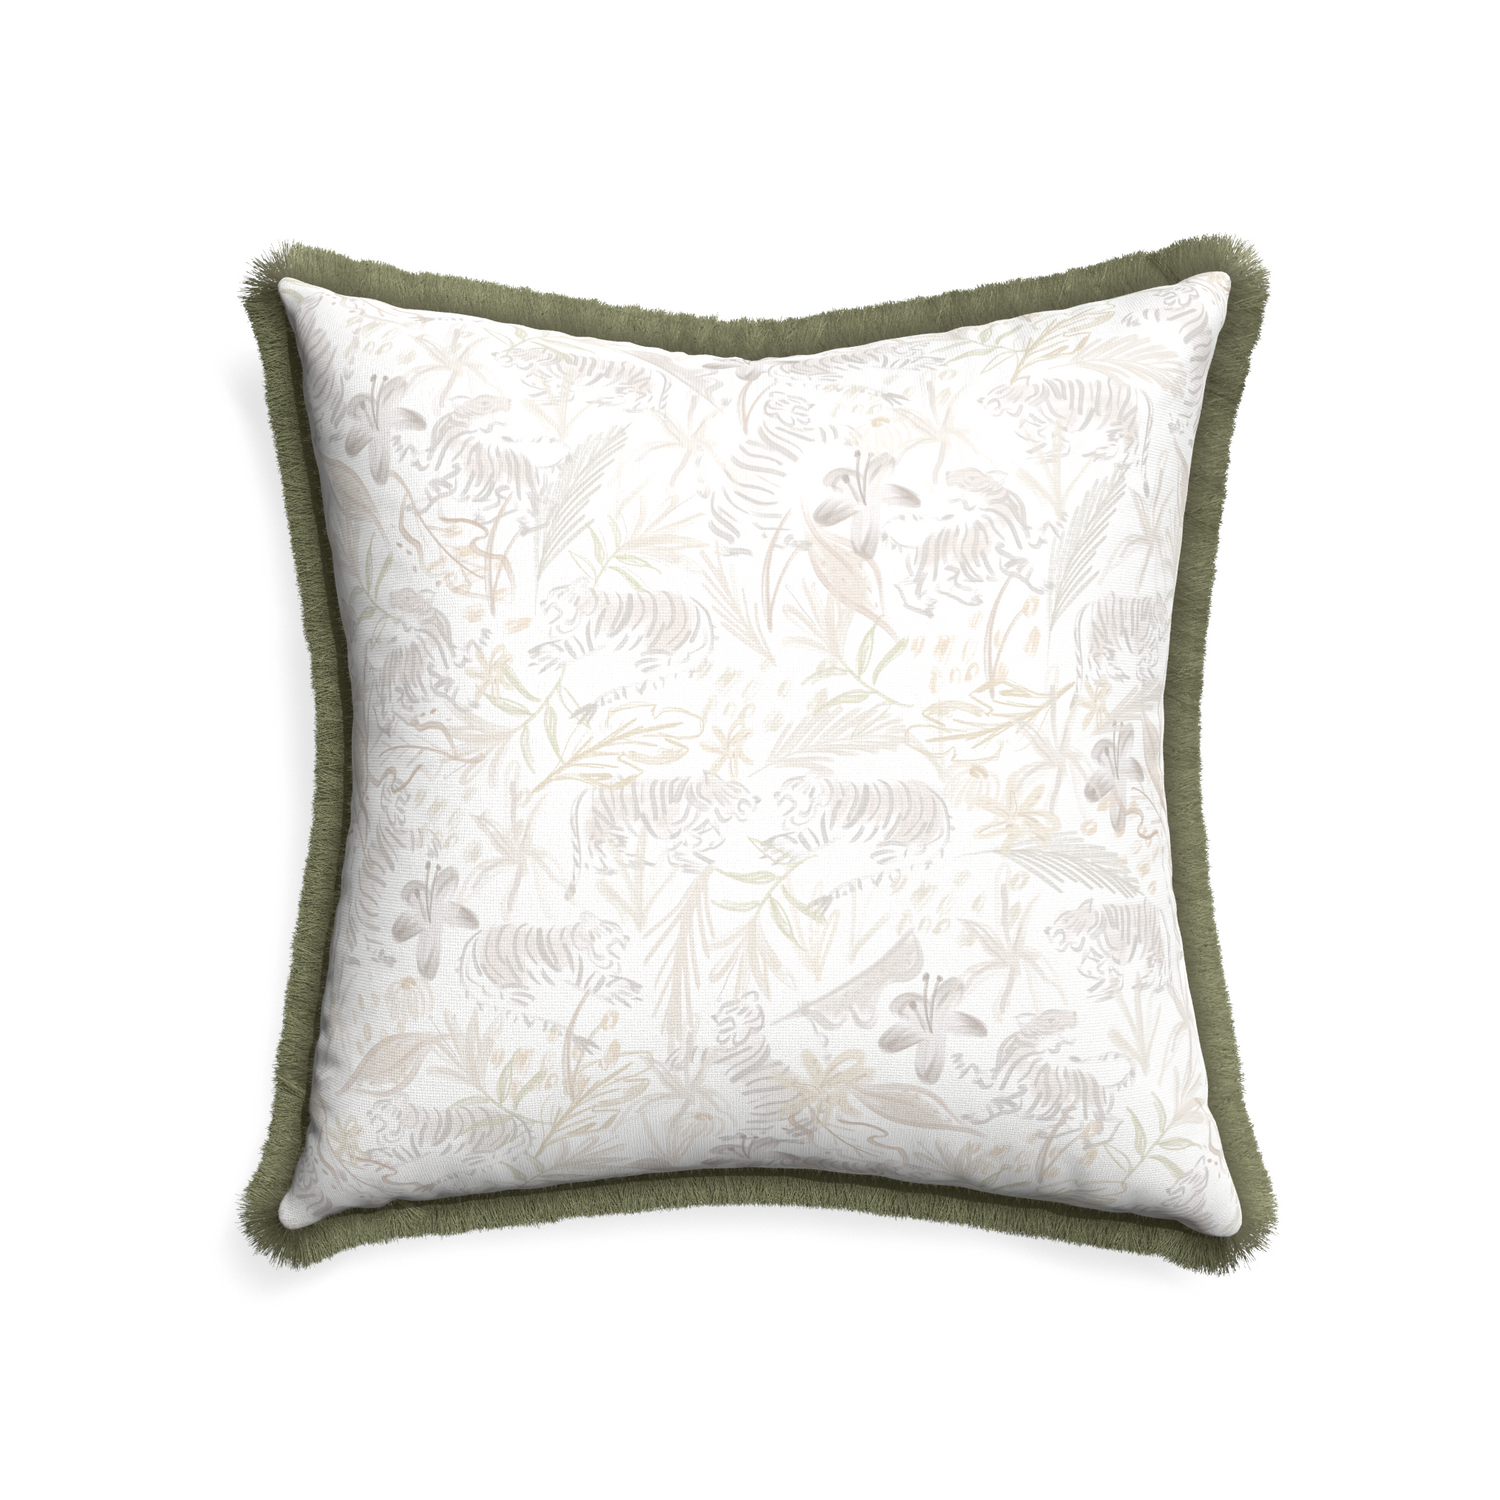 22-square frida sand custom pillow with sage fringe on white background